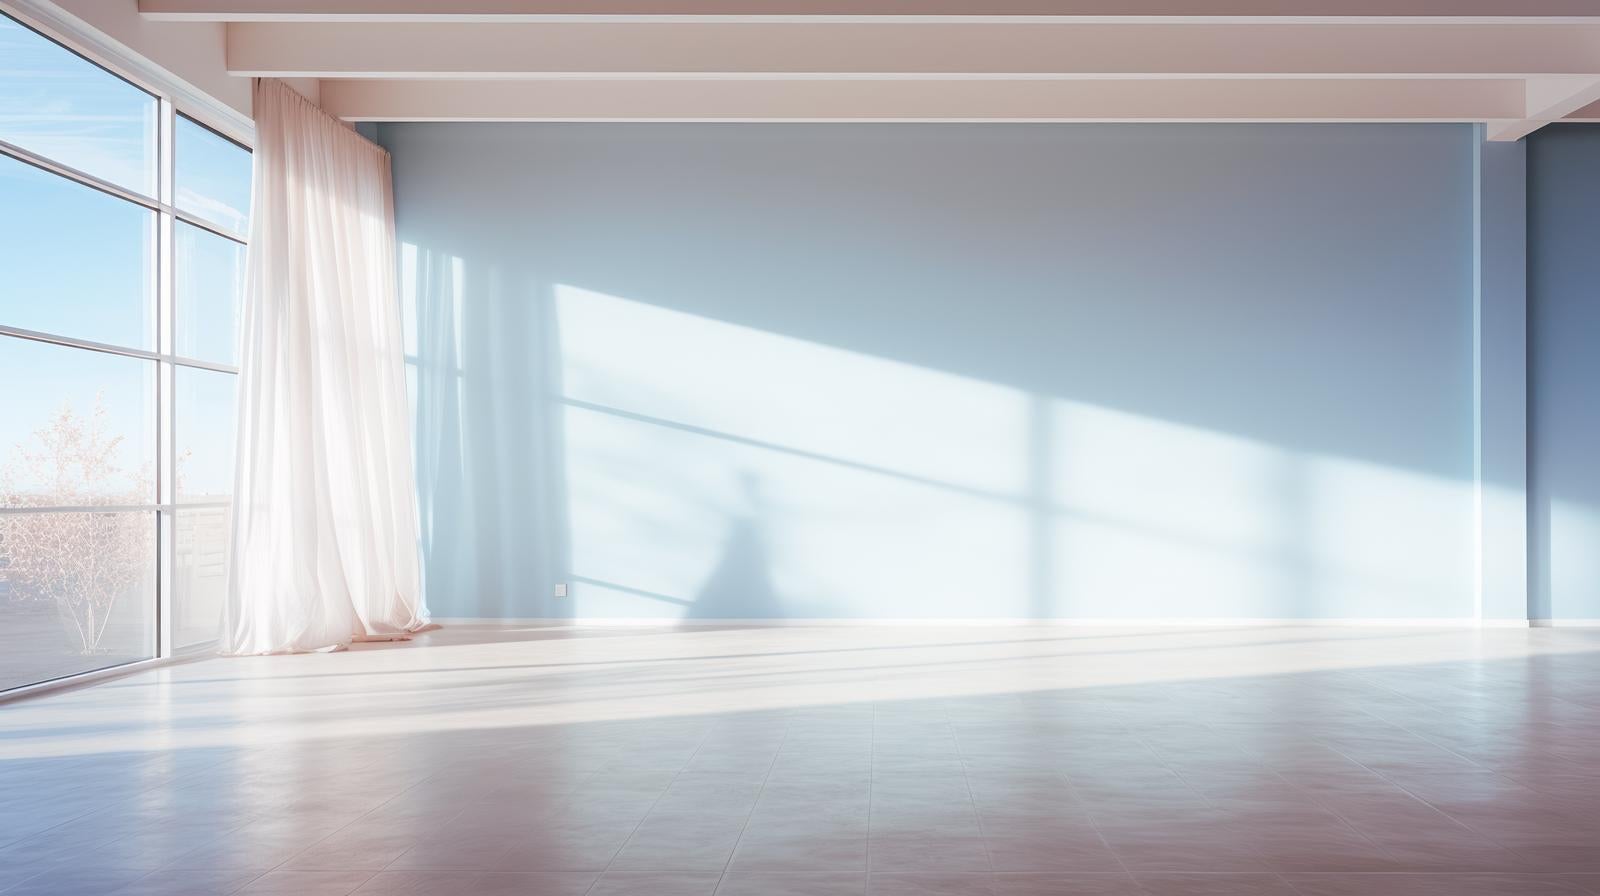 「自然光が入る透明感のある部屋」の写真